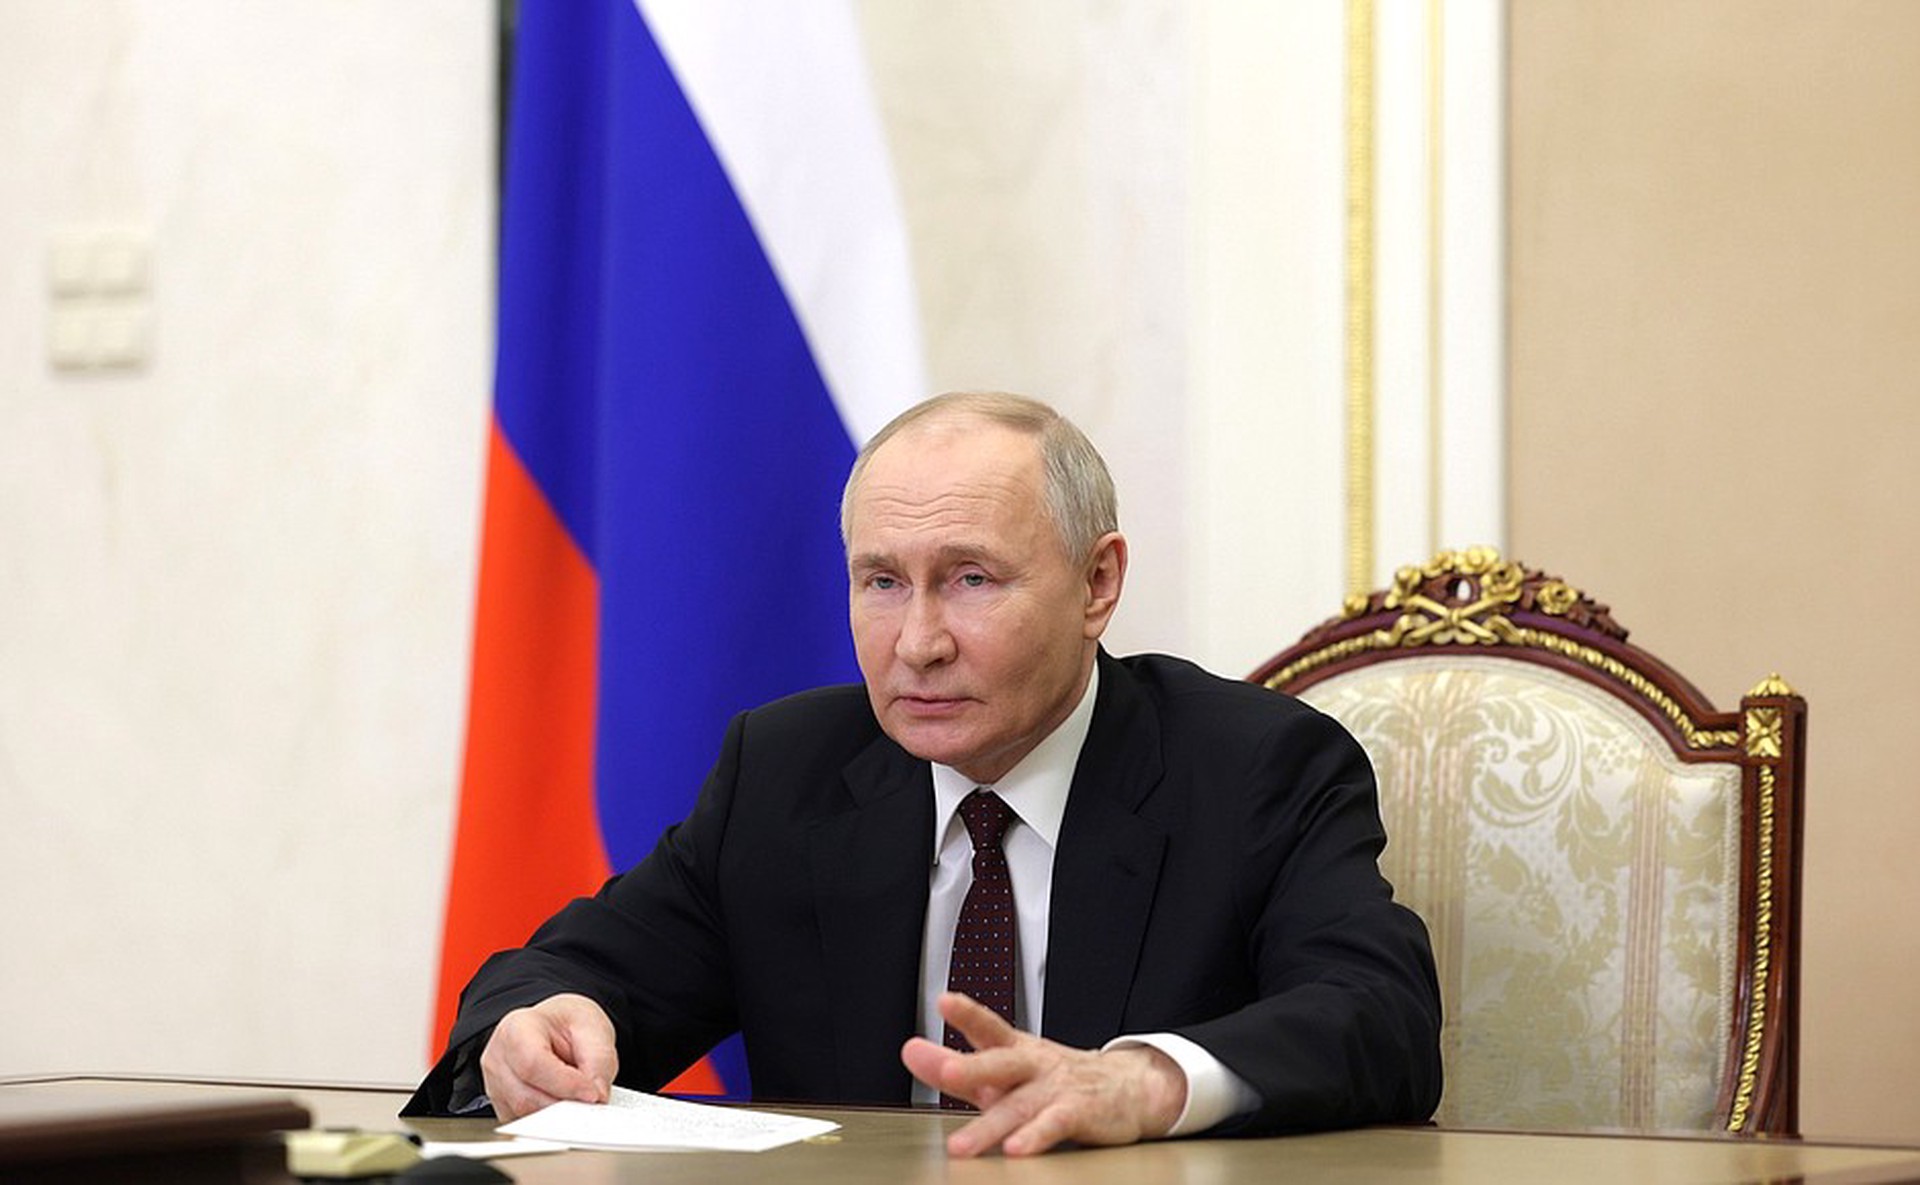 Володин назвал Путина преимуществом России